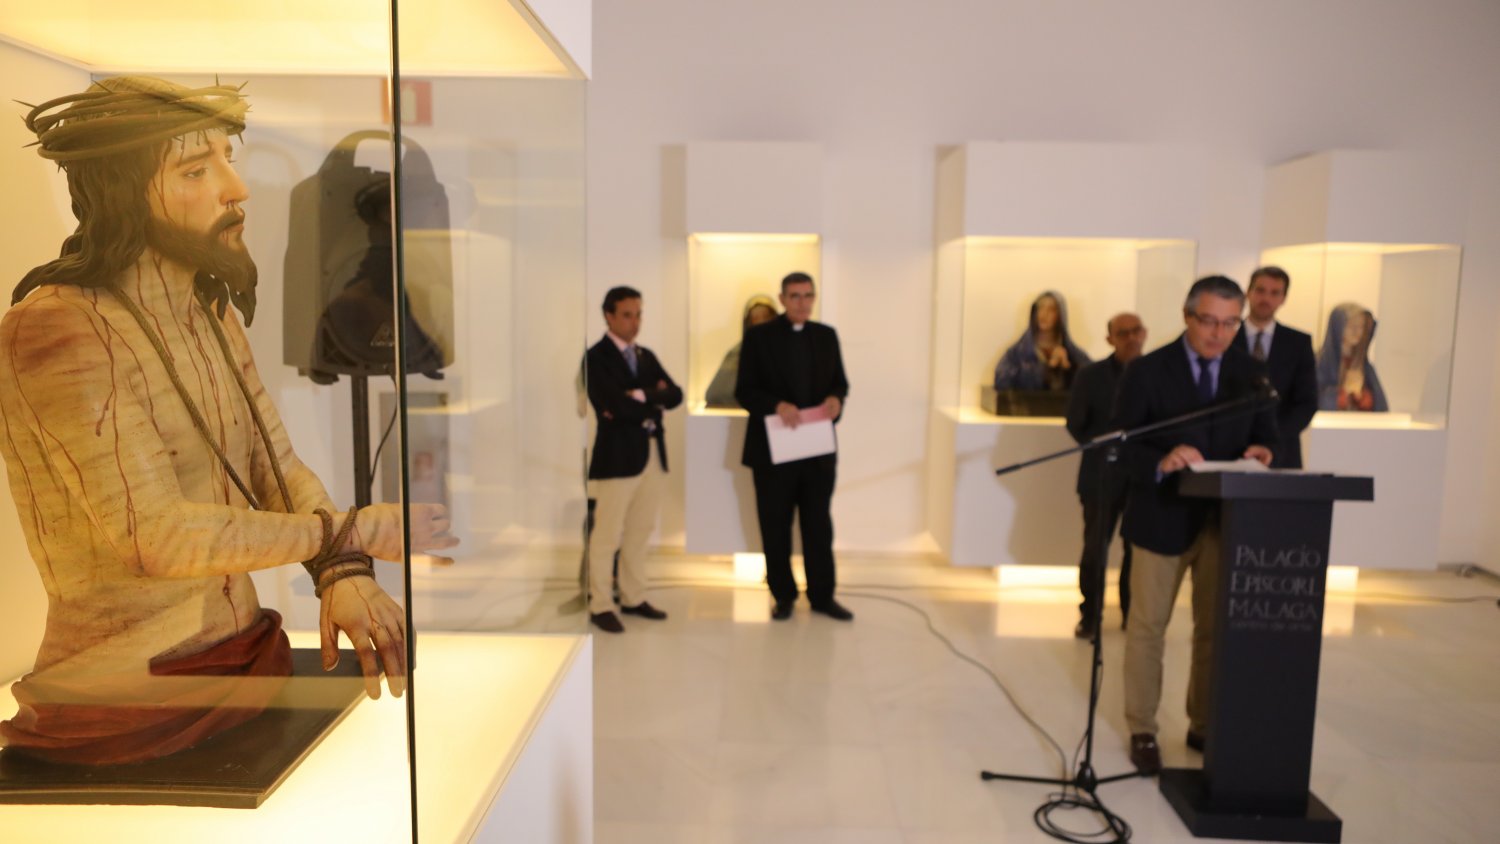 La Diputación de Málaga organiza un ciclo de conciertos en el marco de la exposición sobre Pedro de Mena